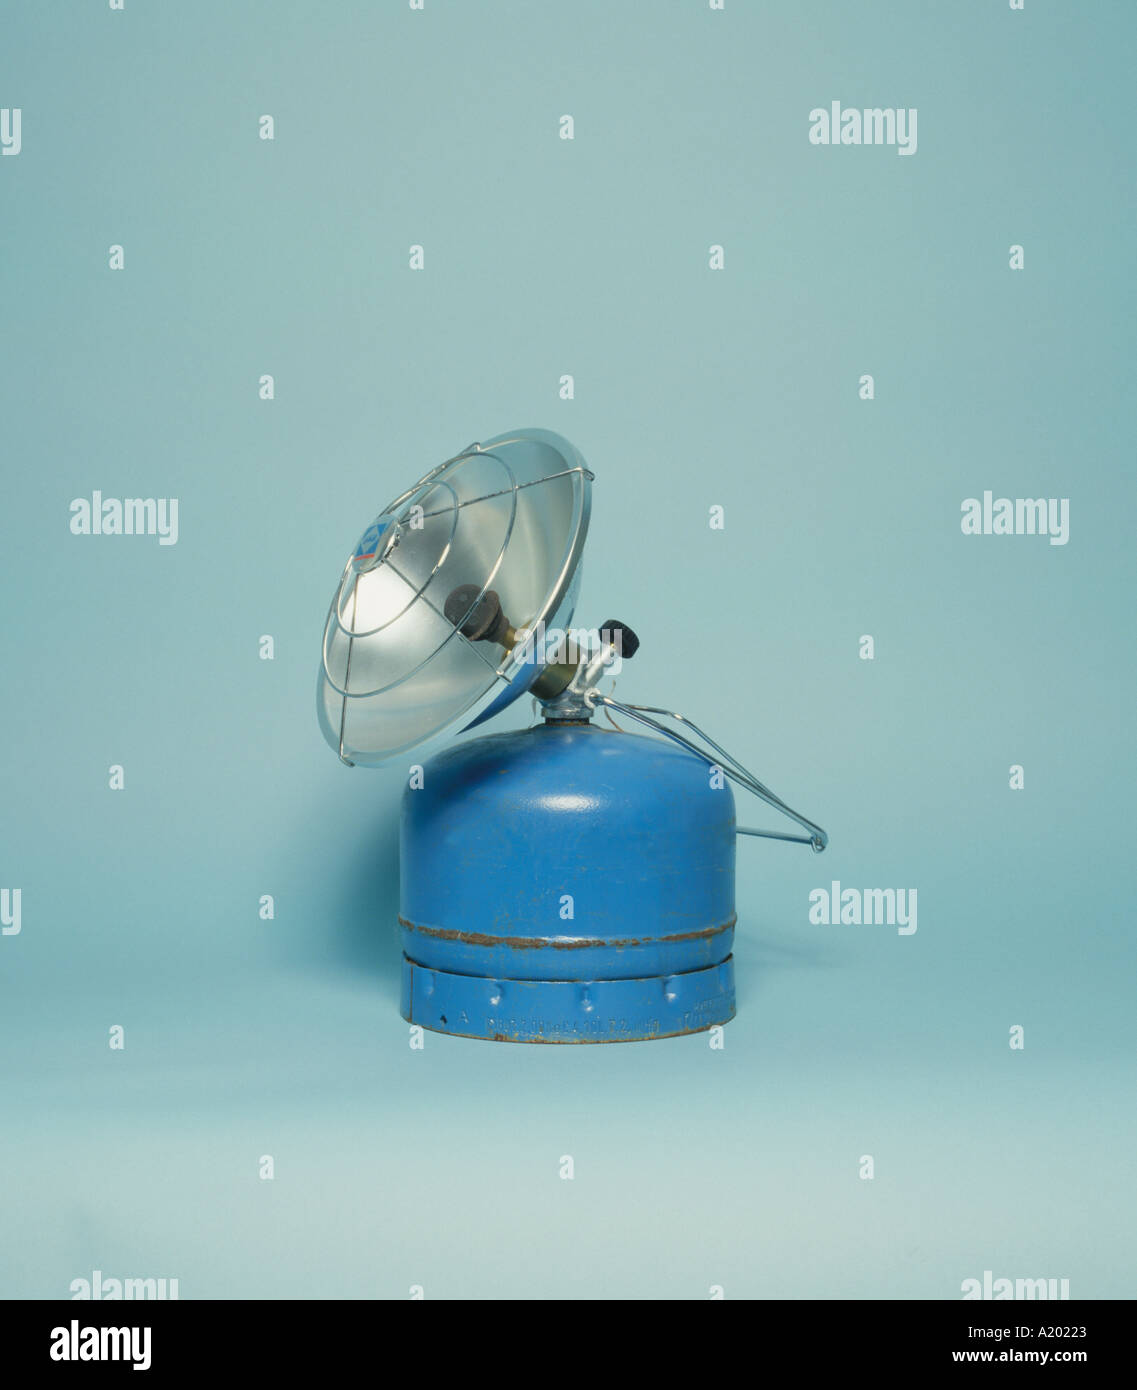 Chauffage camping gaz avec réflecteur Photo Stock - Alamy